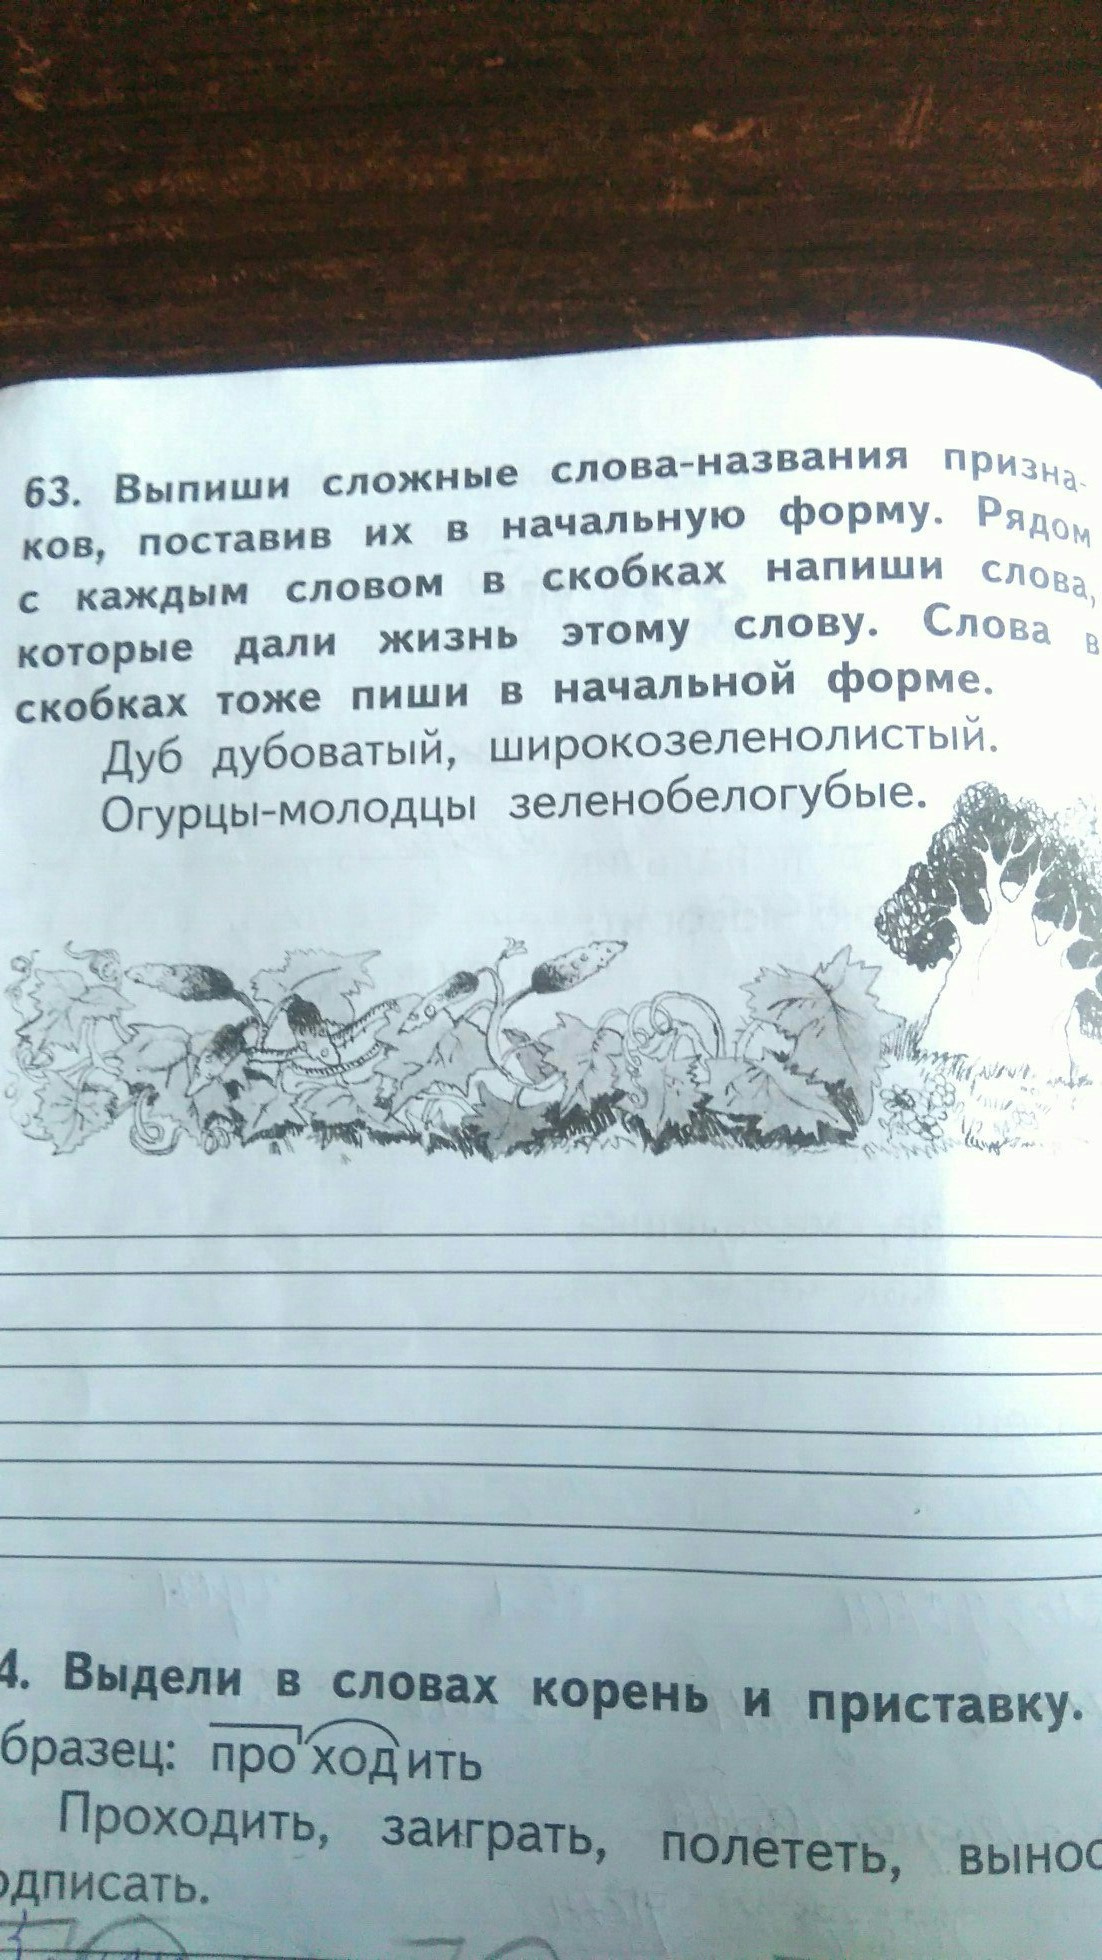 Самые нелепые задания из учебников для челябинских школьников 20 декабря  2019 - 20 декабря 2019 - 74.ru